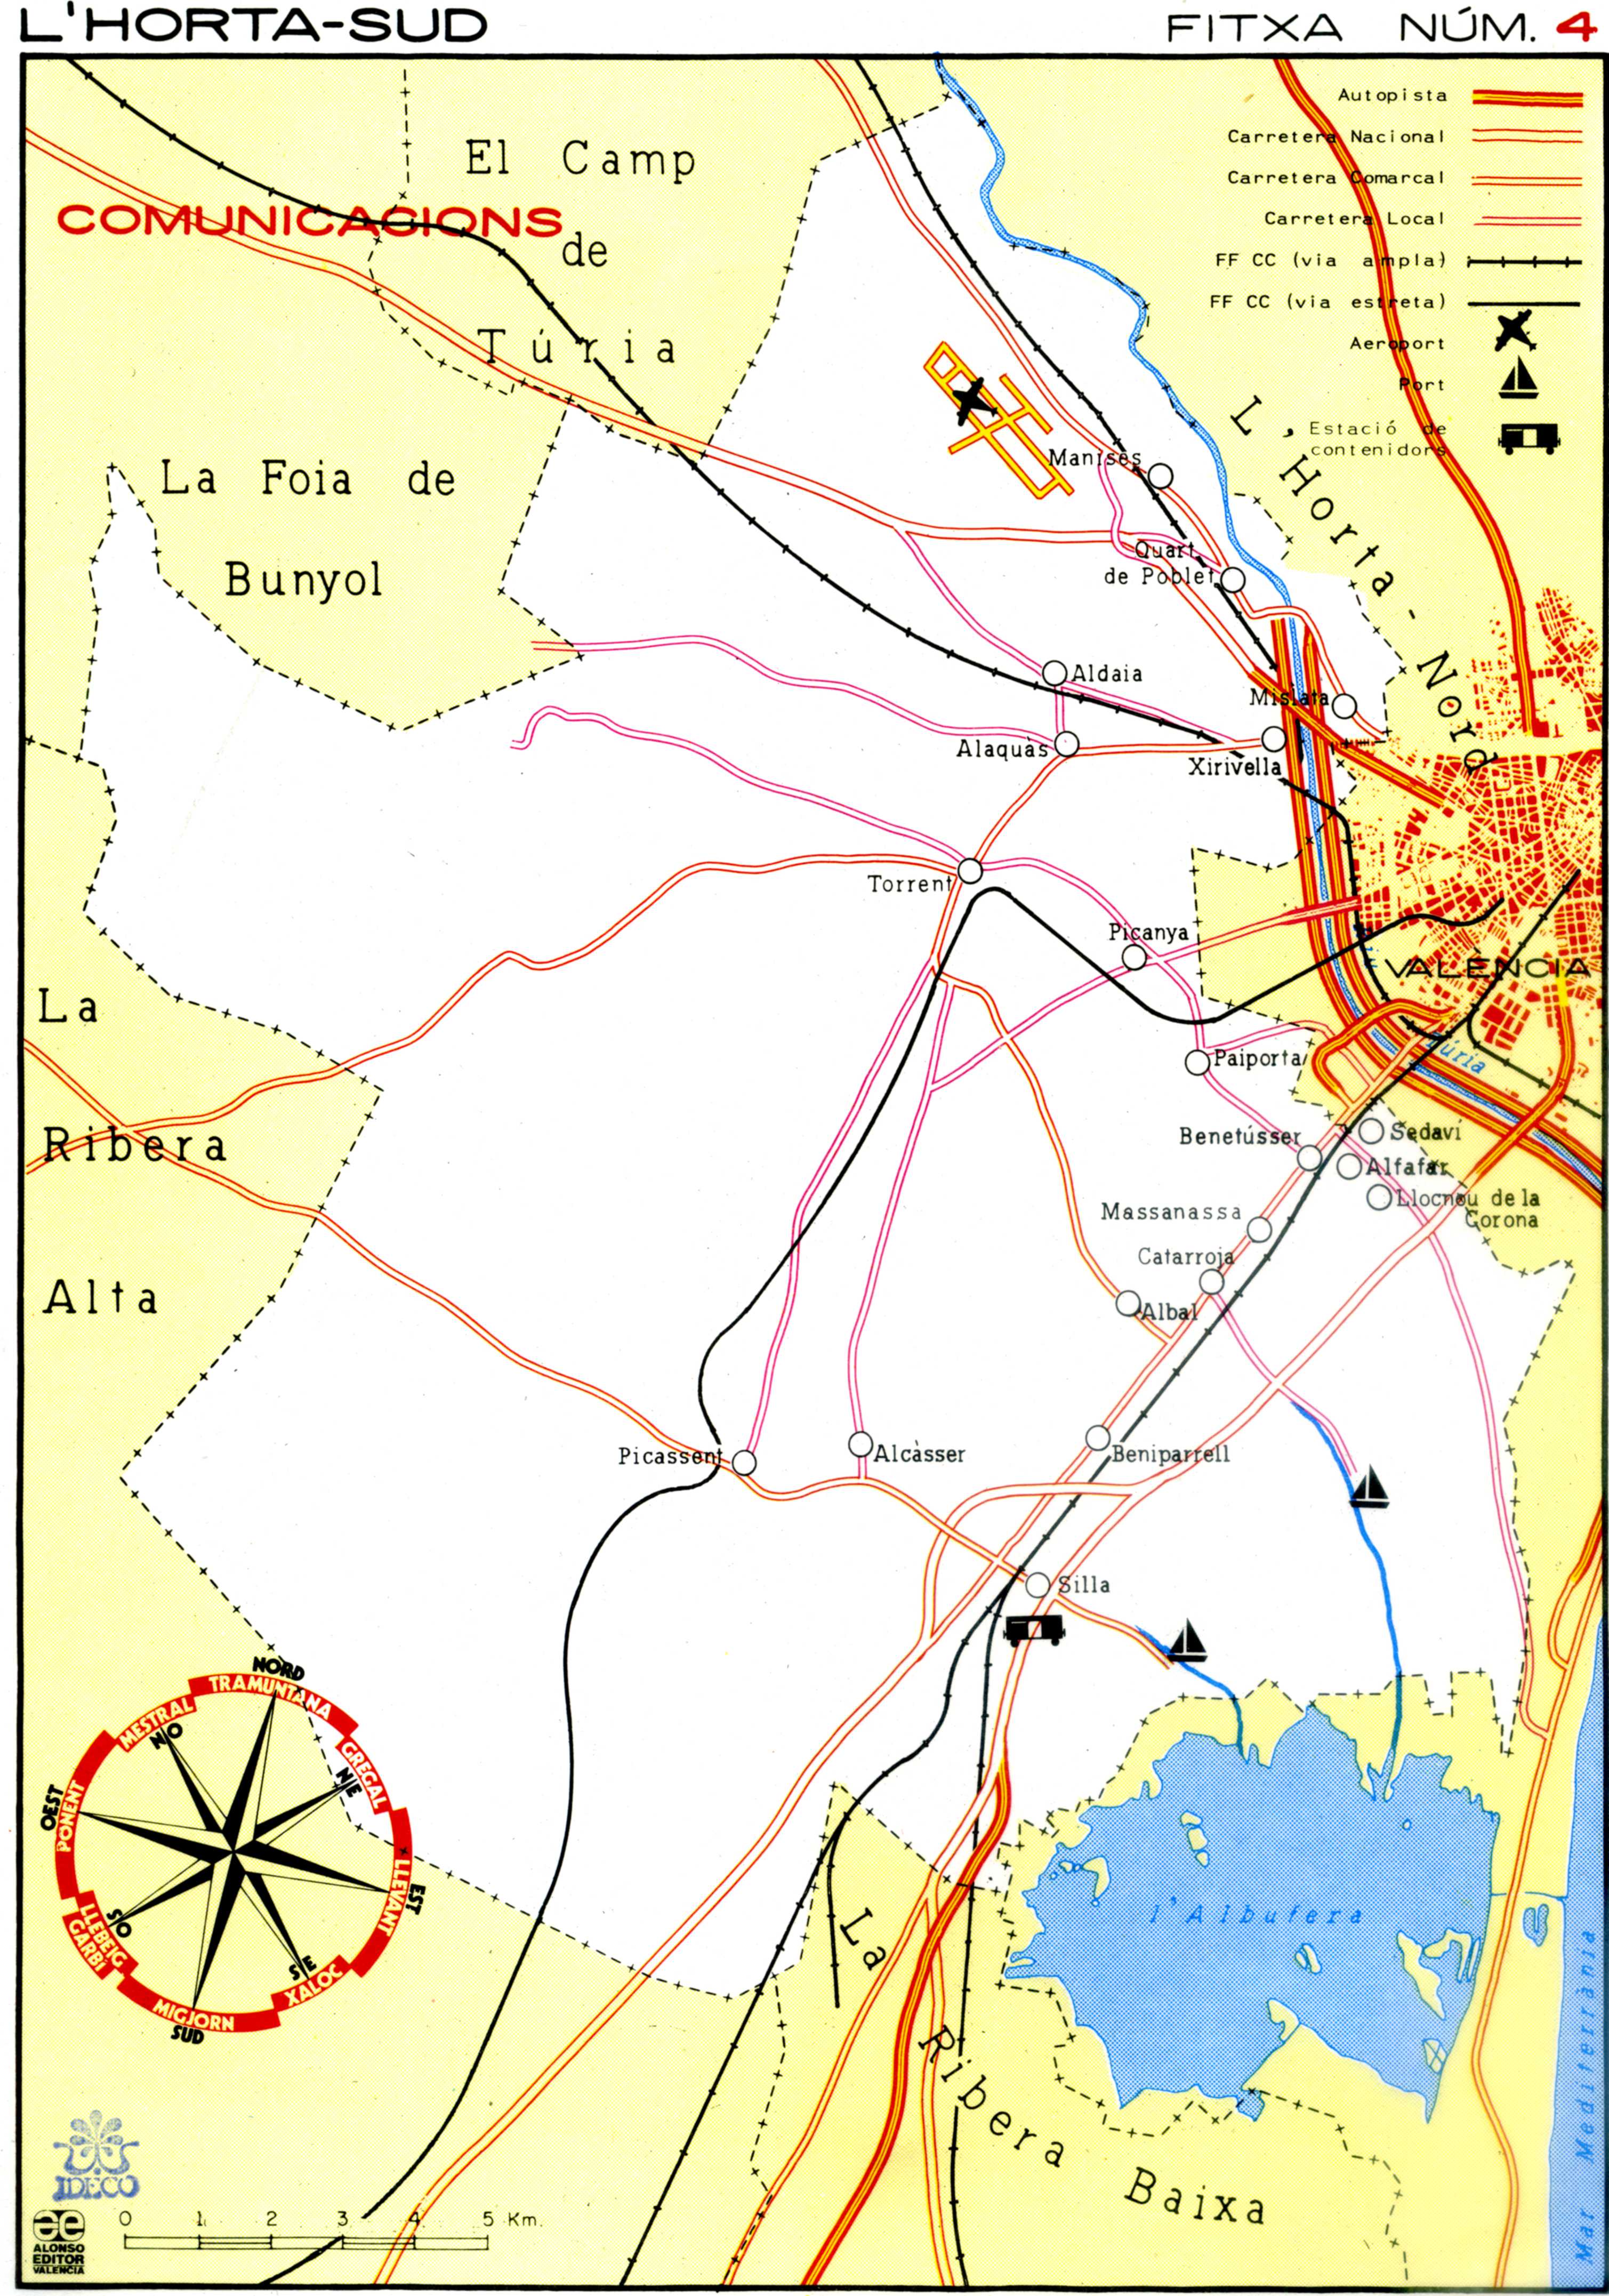 CEL-DO-A0122 - Mapes escolars de L'Horta Sud (4)